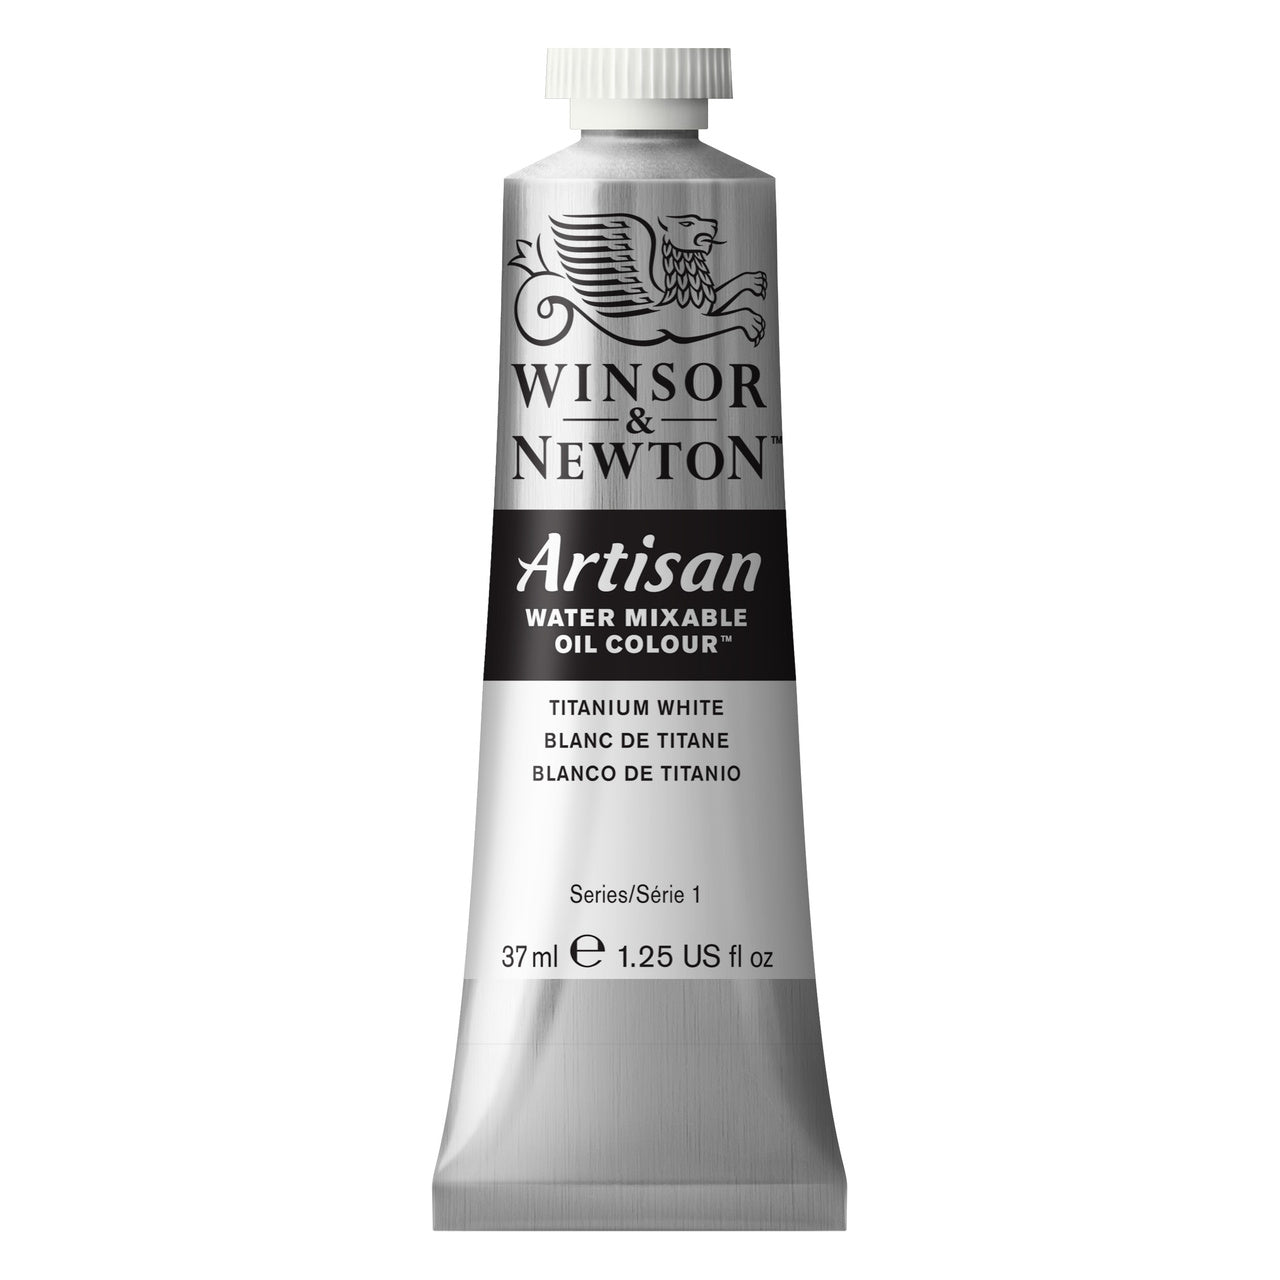 Winsor & Newton Artisan Water Mixable Oil 37ml - Titanium White - merriartist.com